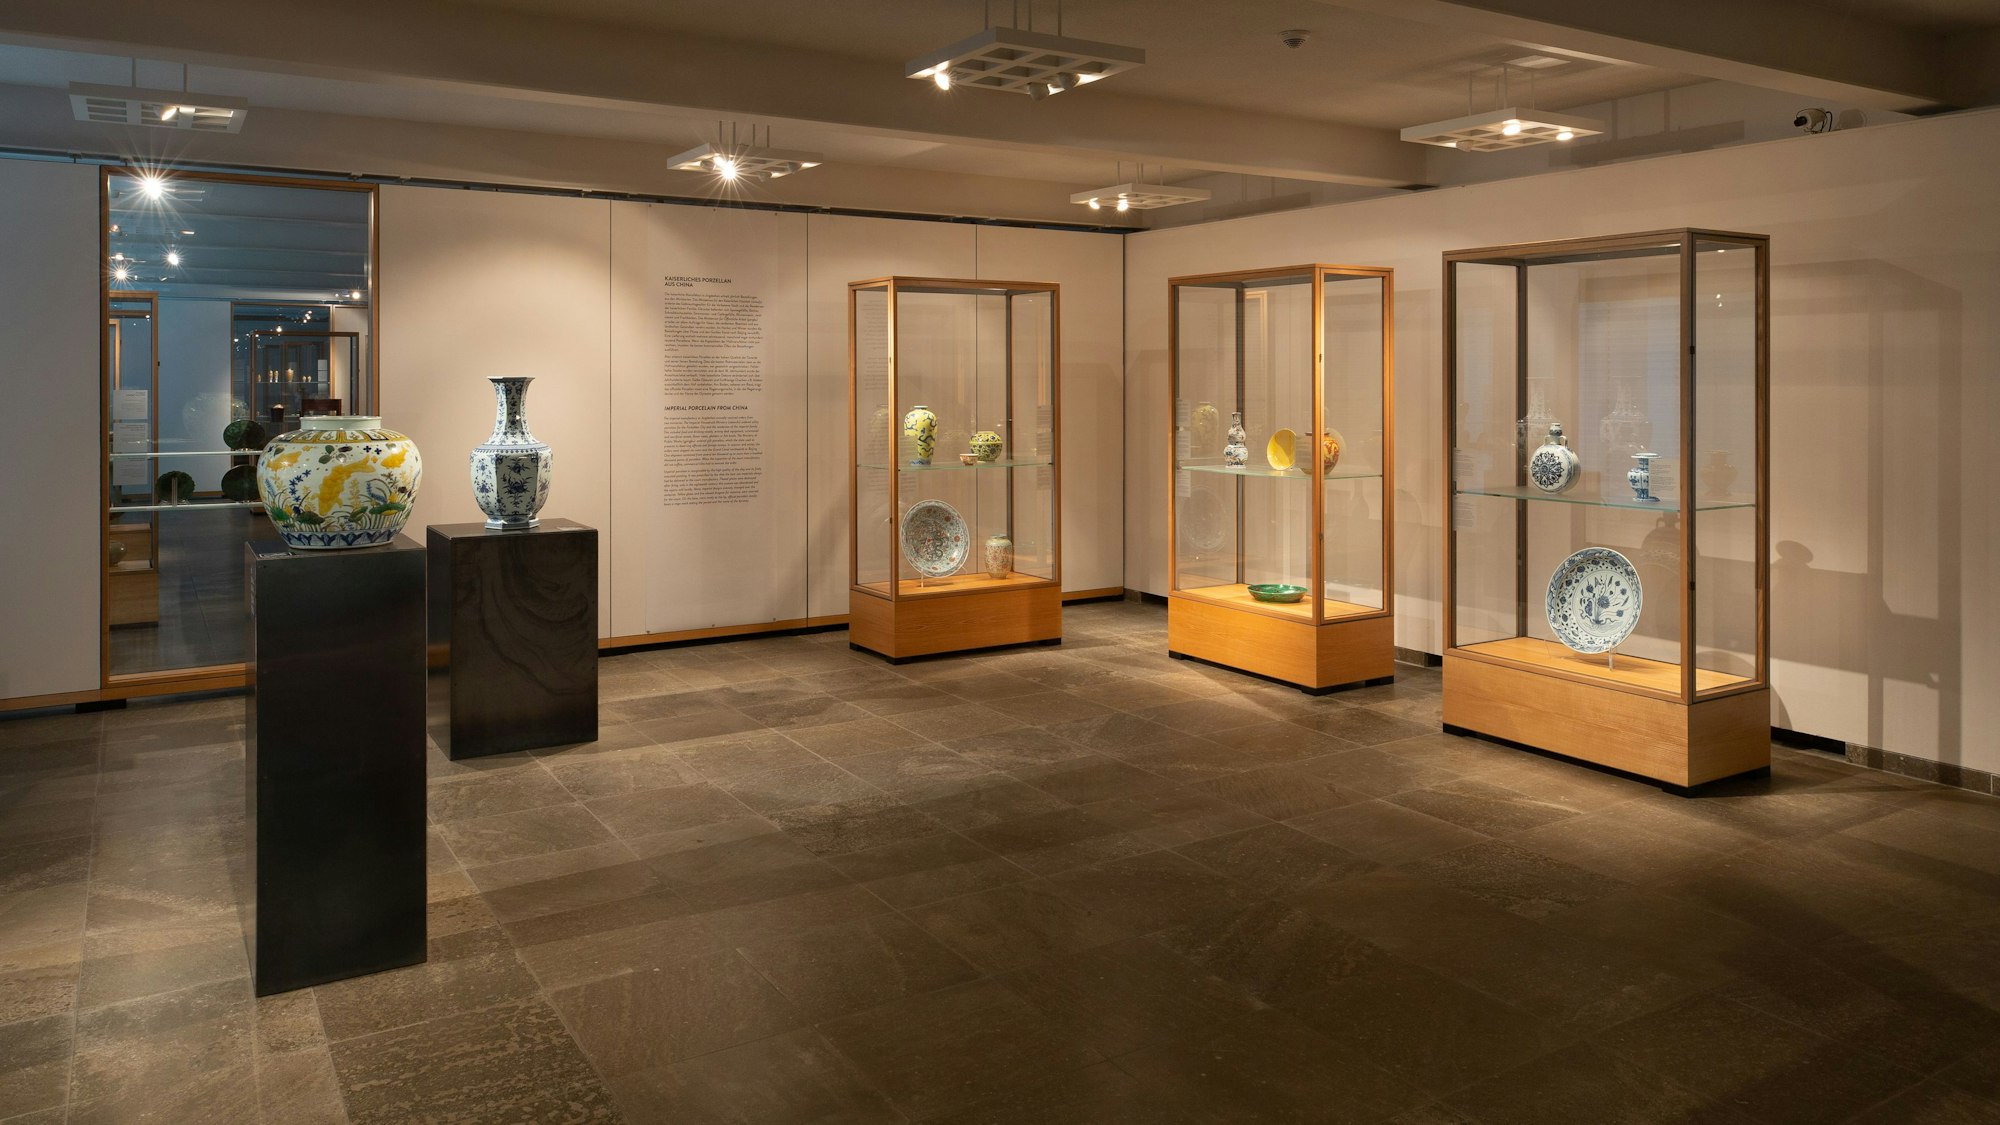 Blick in den Ausstellungsraum, wo die Täter die Porzellan-Objekte aus den Vitrinen gestohlen haben